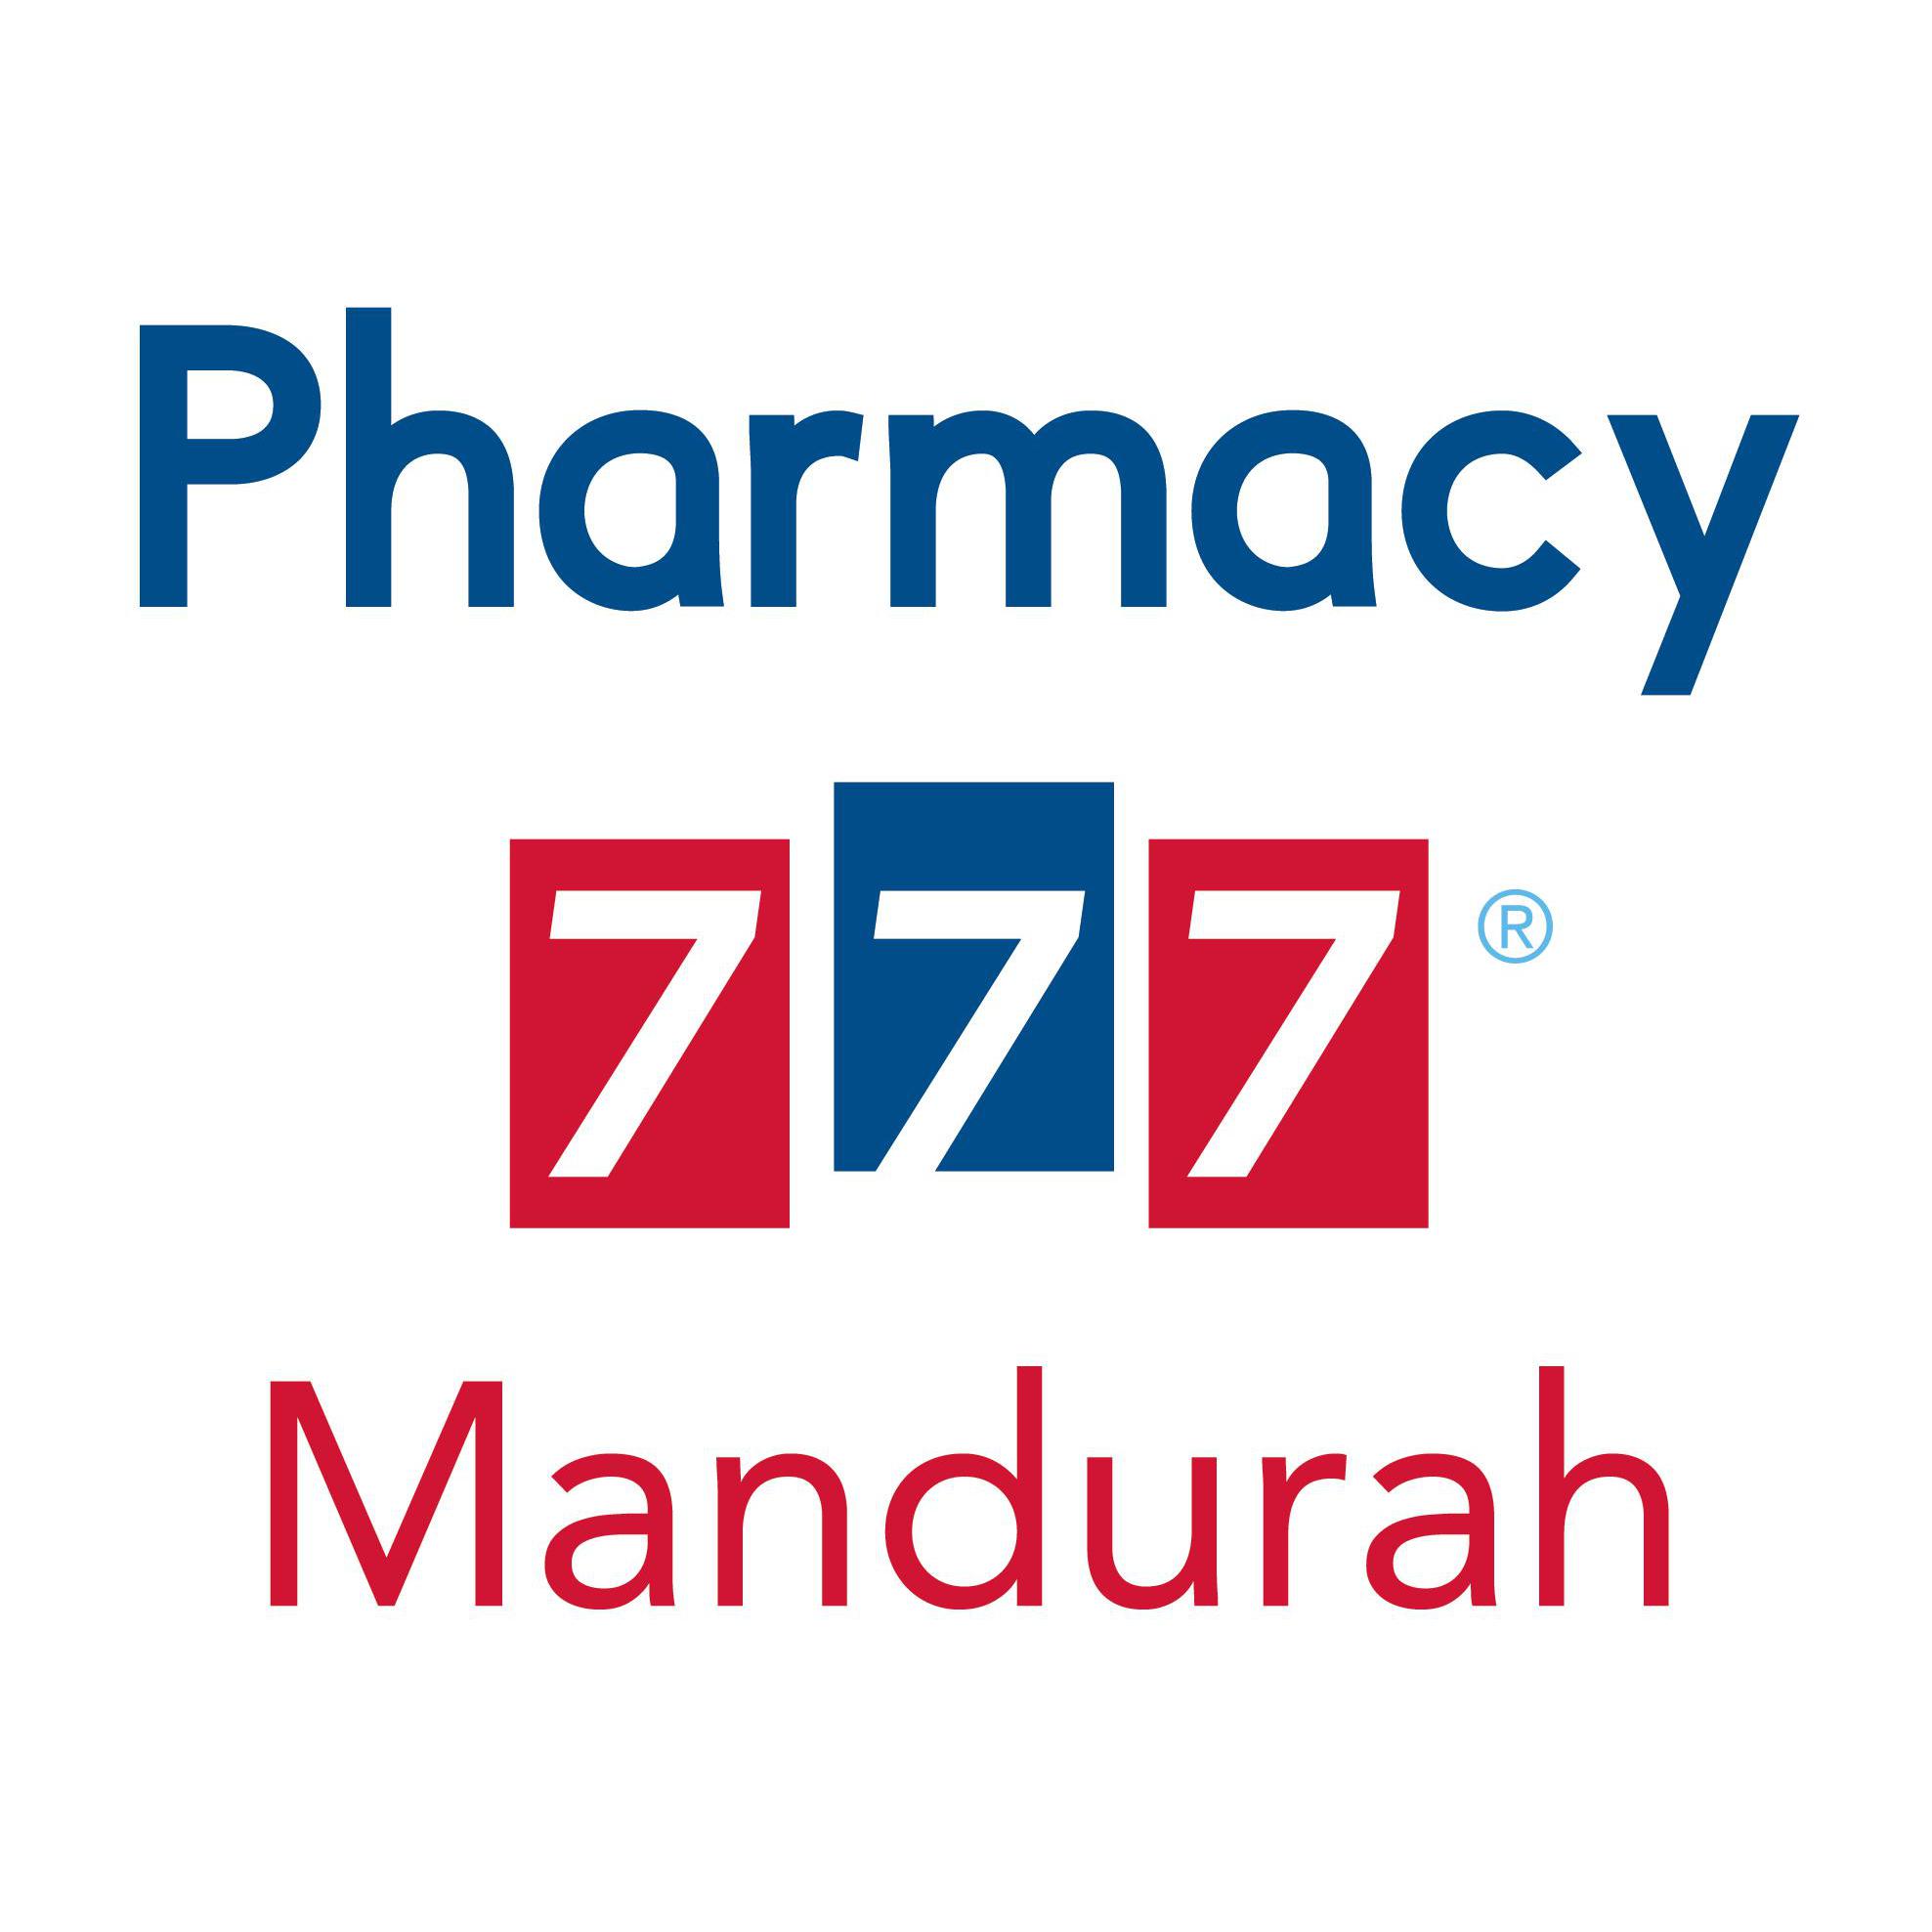 Pharmacy 777 Mandurah Logo